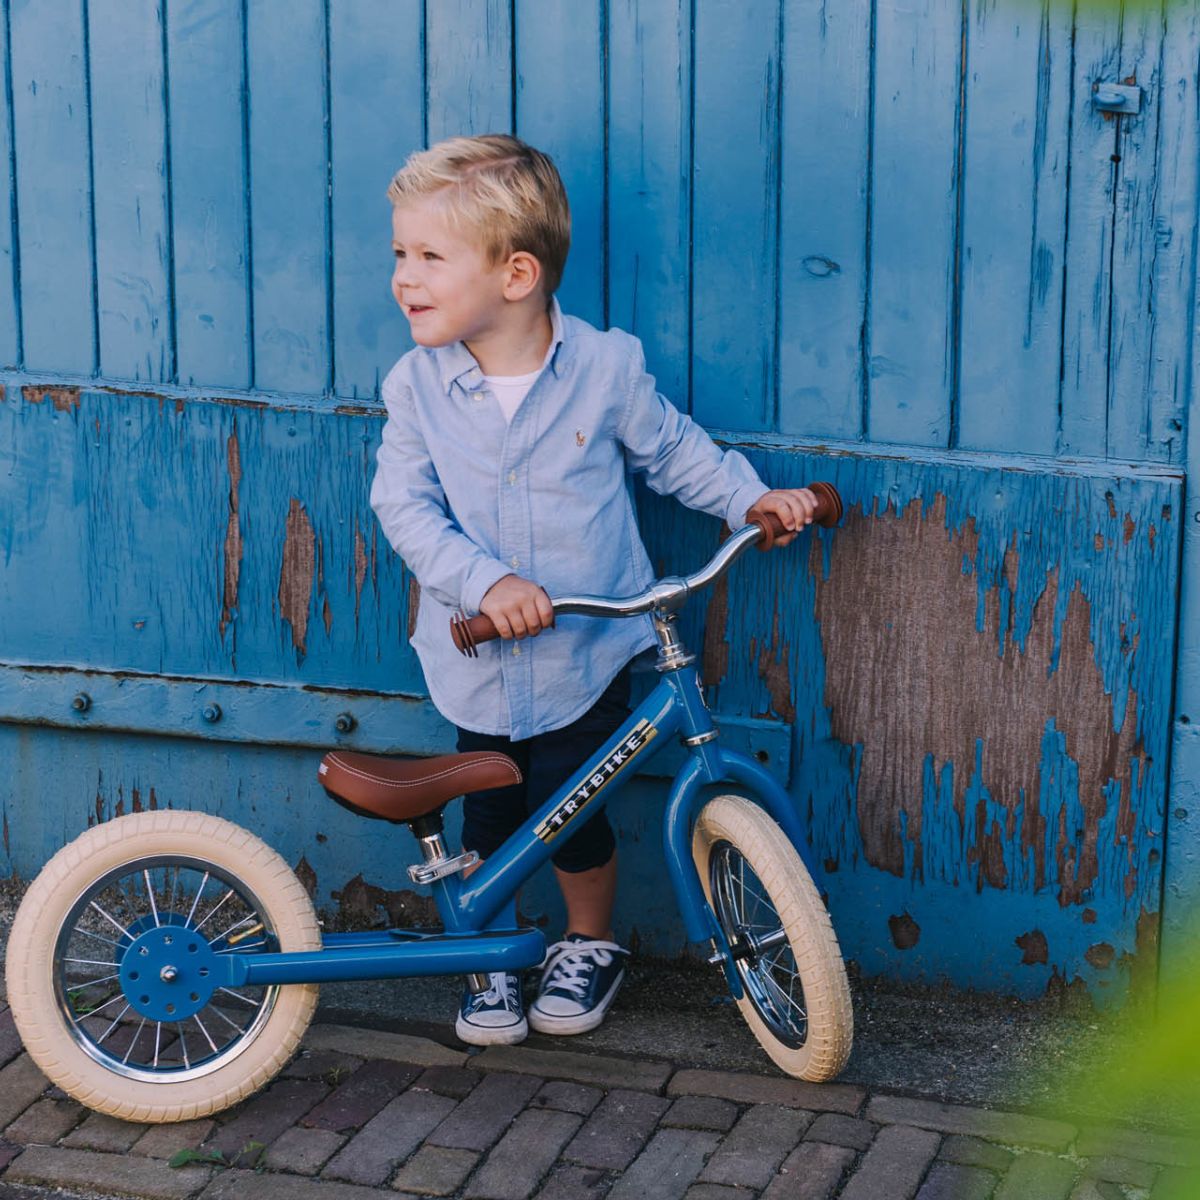 Bestel de Trybike steel 2-in-1 driewieler in de kleur vintage blue en laat je kindje het plezier van fietsen ontdekken! Eenvoudig om te bouwen van een loopfiets naar een echte fiets. Duurzaam en veilig. VanZus